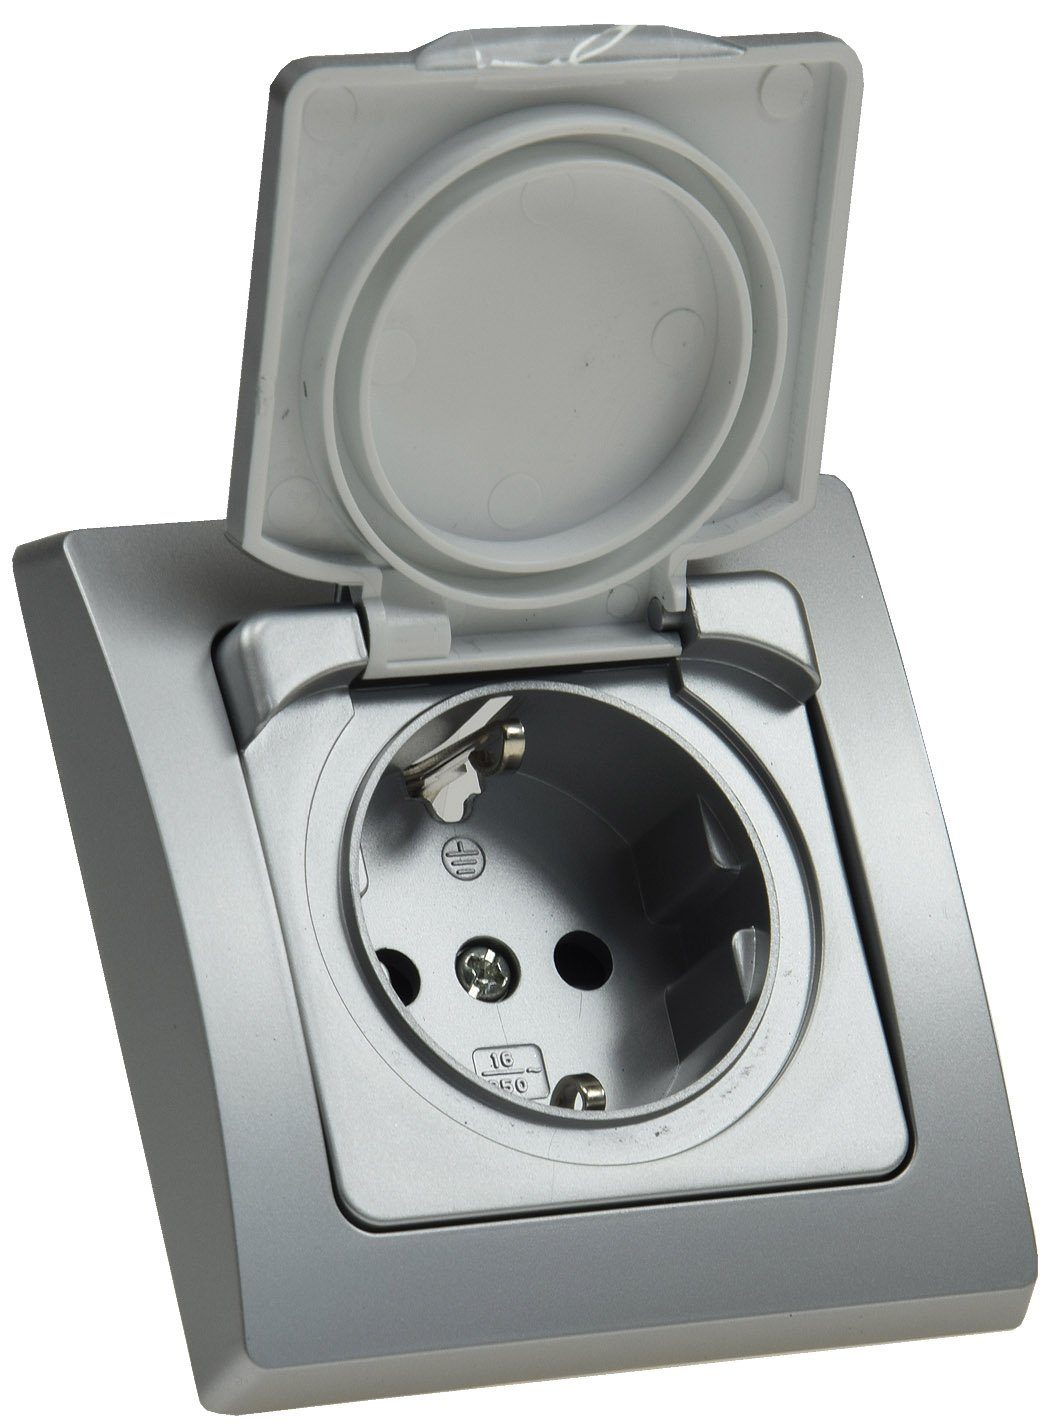 ChiliTec Schalter DELPHI Steckdose Unterputz Feuchtraum mit Schutz-Deckel  Gummidichtung